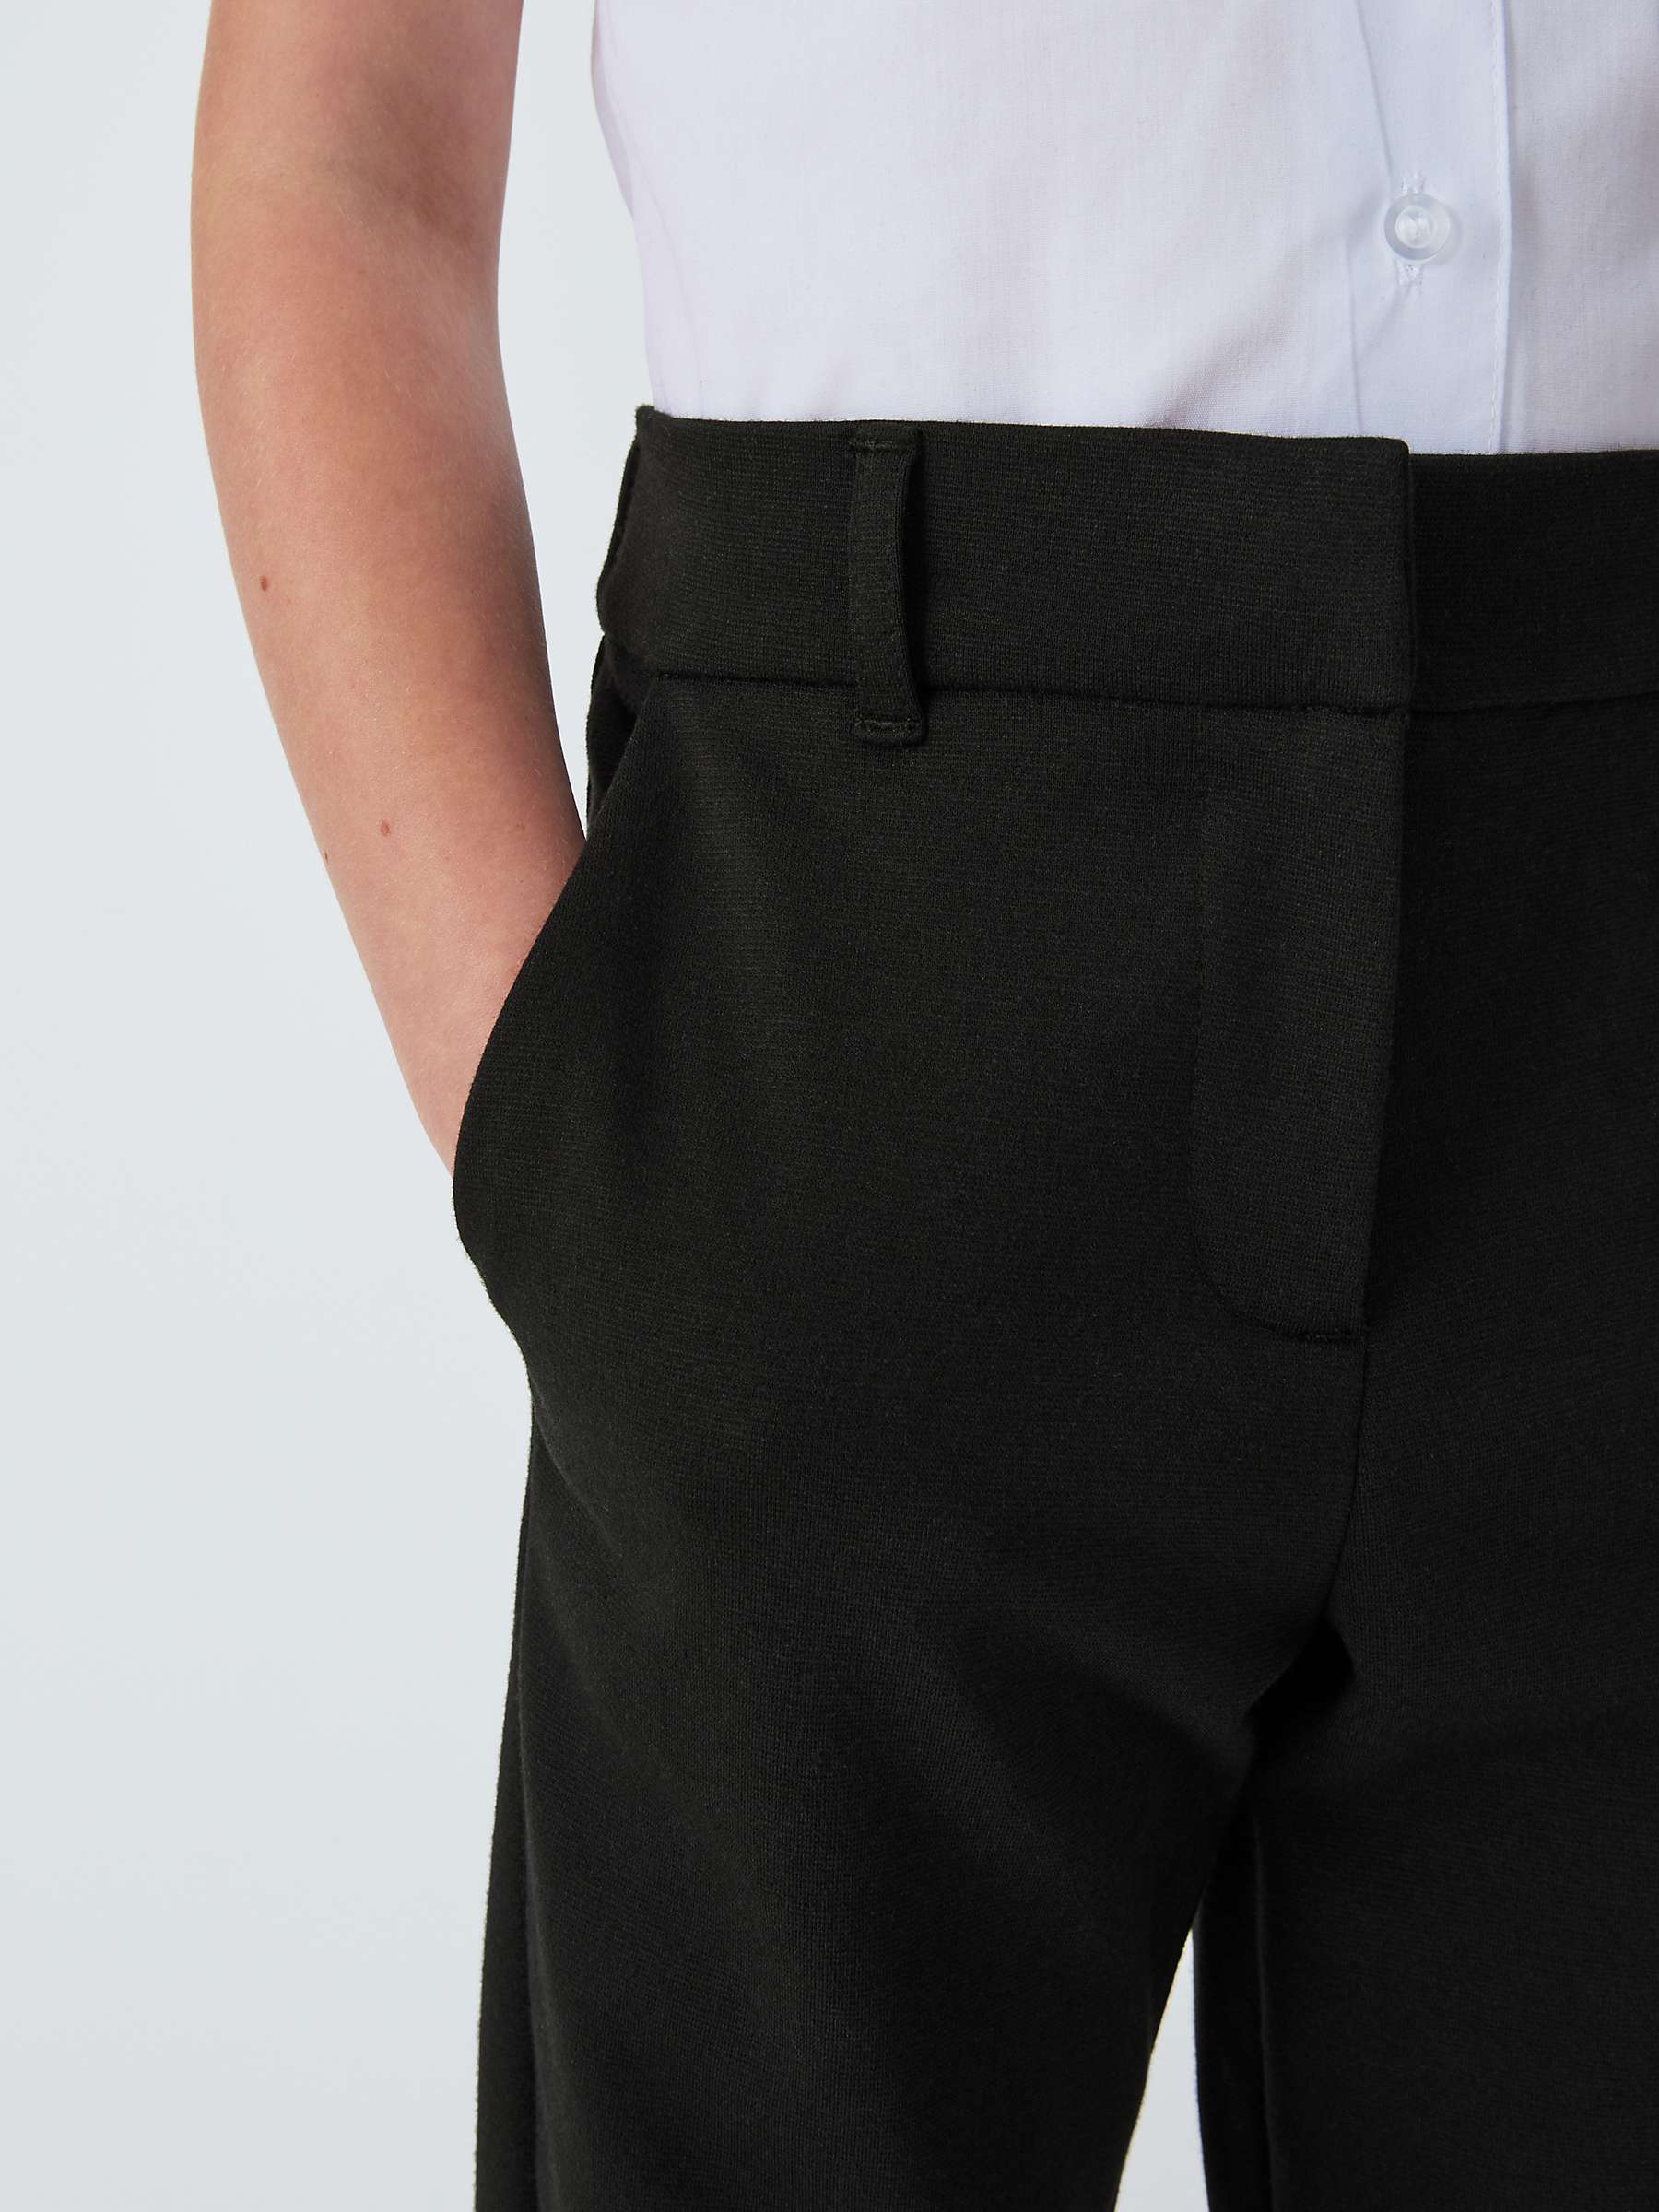 Buy John Lewis Jersey Slim School Trousers, Black Online at johnlewis.com